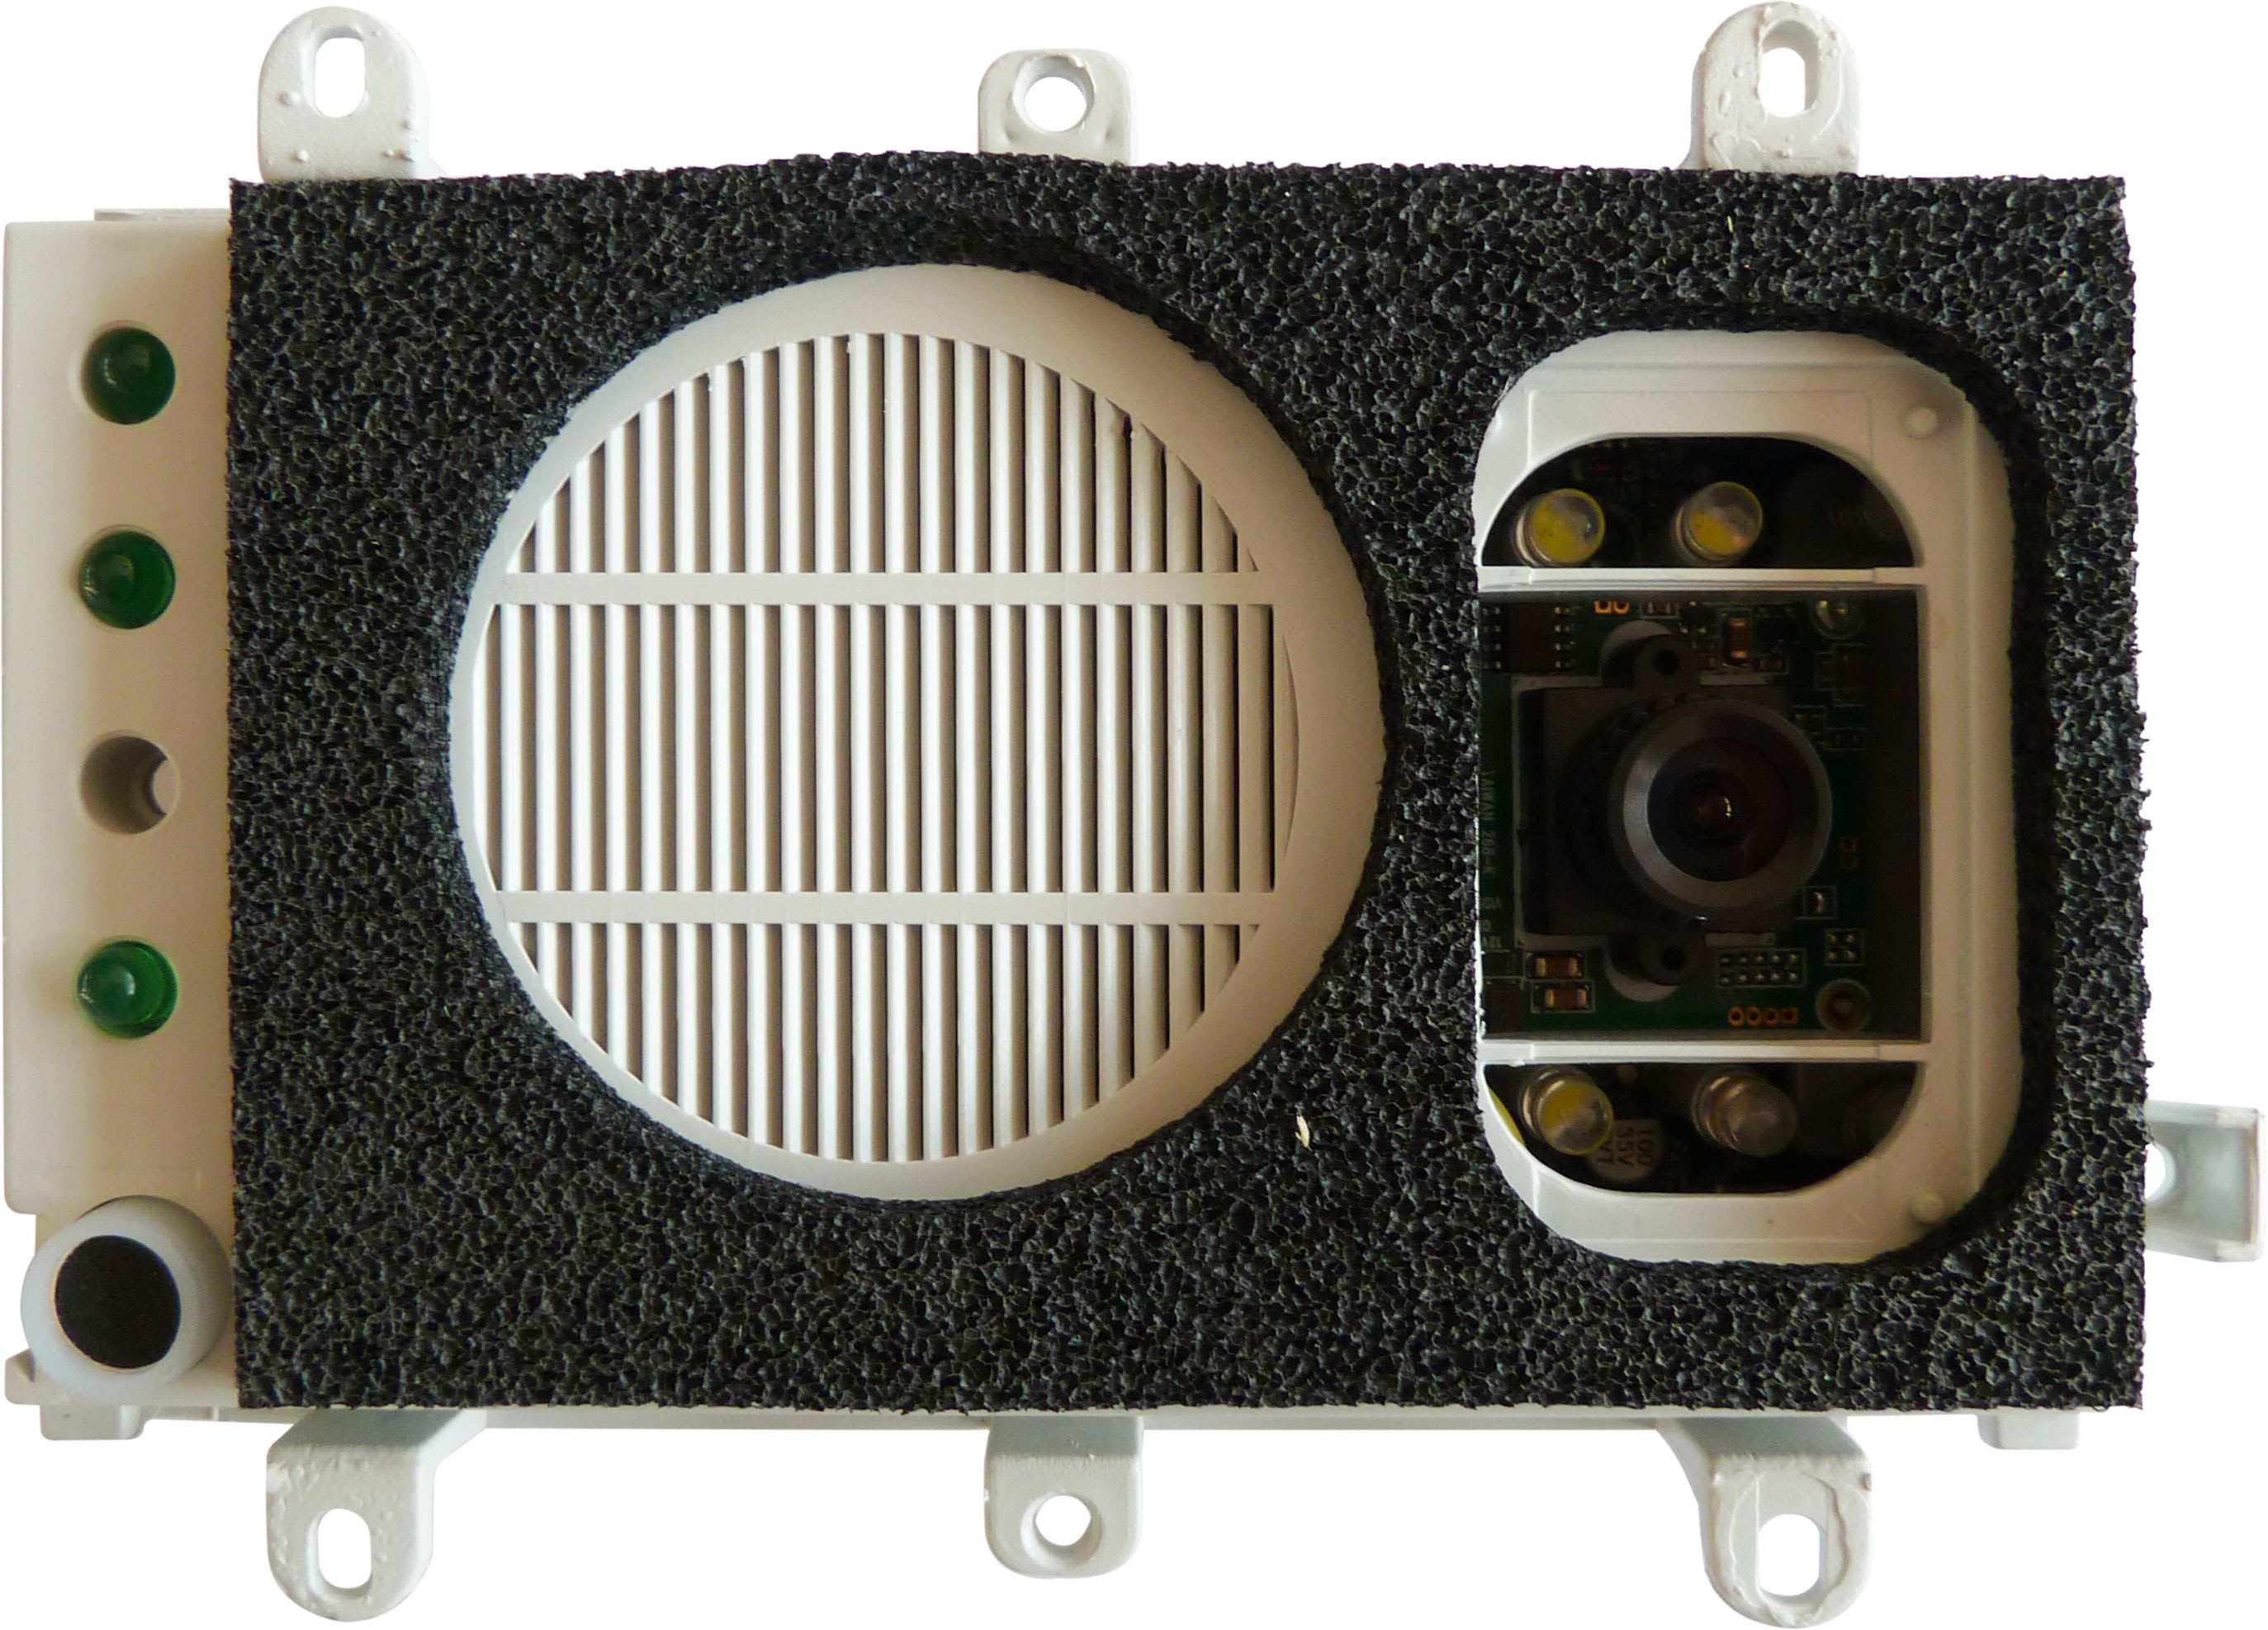 TONNA - Bloc audio-video standard en N - amplificateur vidéo, à synthèse vocale réglable